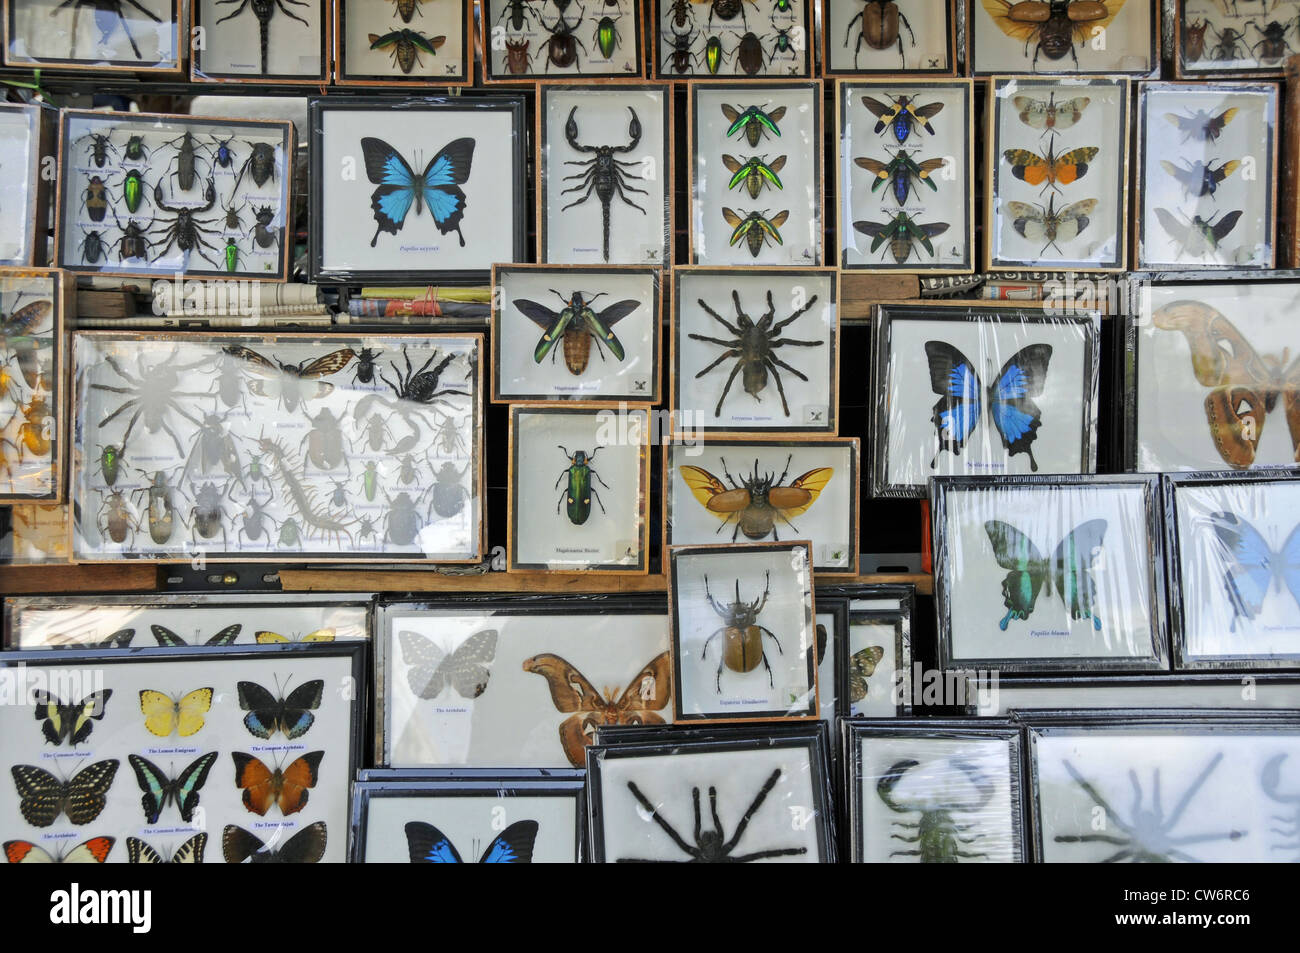 vorbereitet, Schmetterlinge, Insekten, Spinnen und Skorpione im Souvenir-Shop, Thailand, Wat Arun, Bangkok Stockfoto